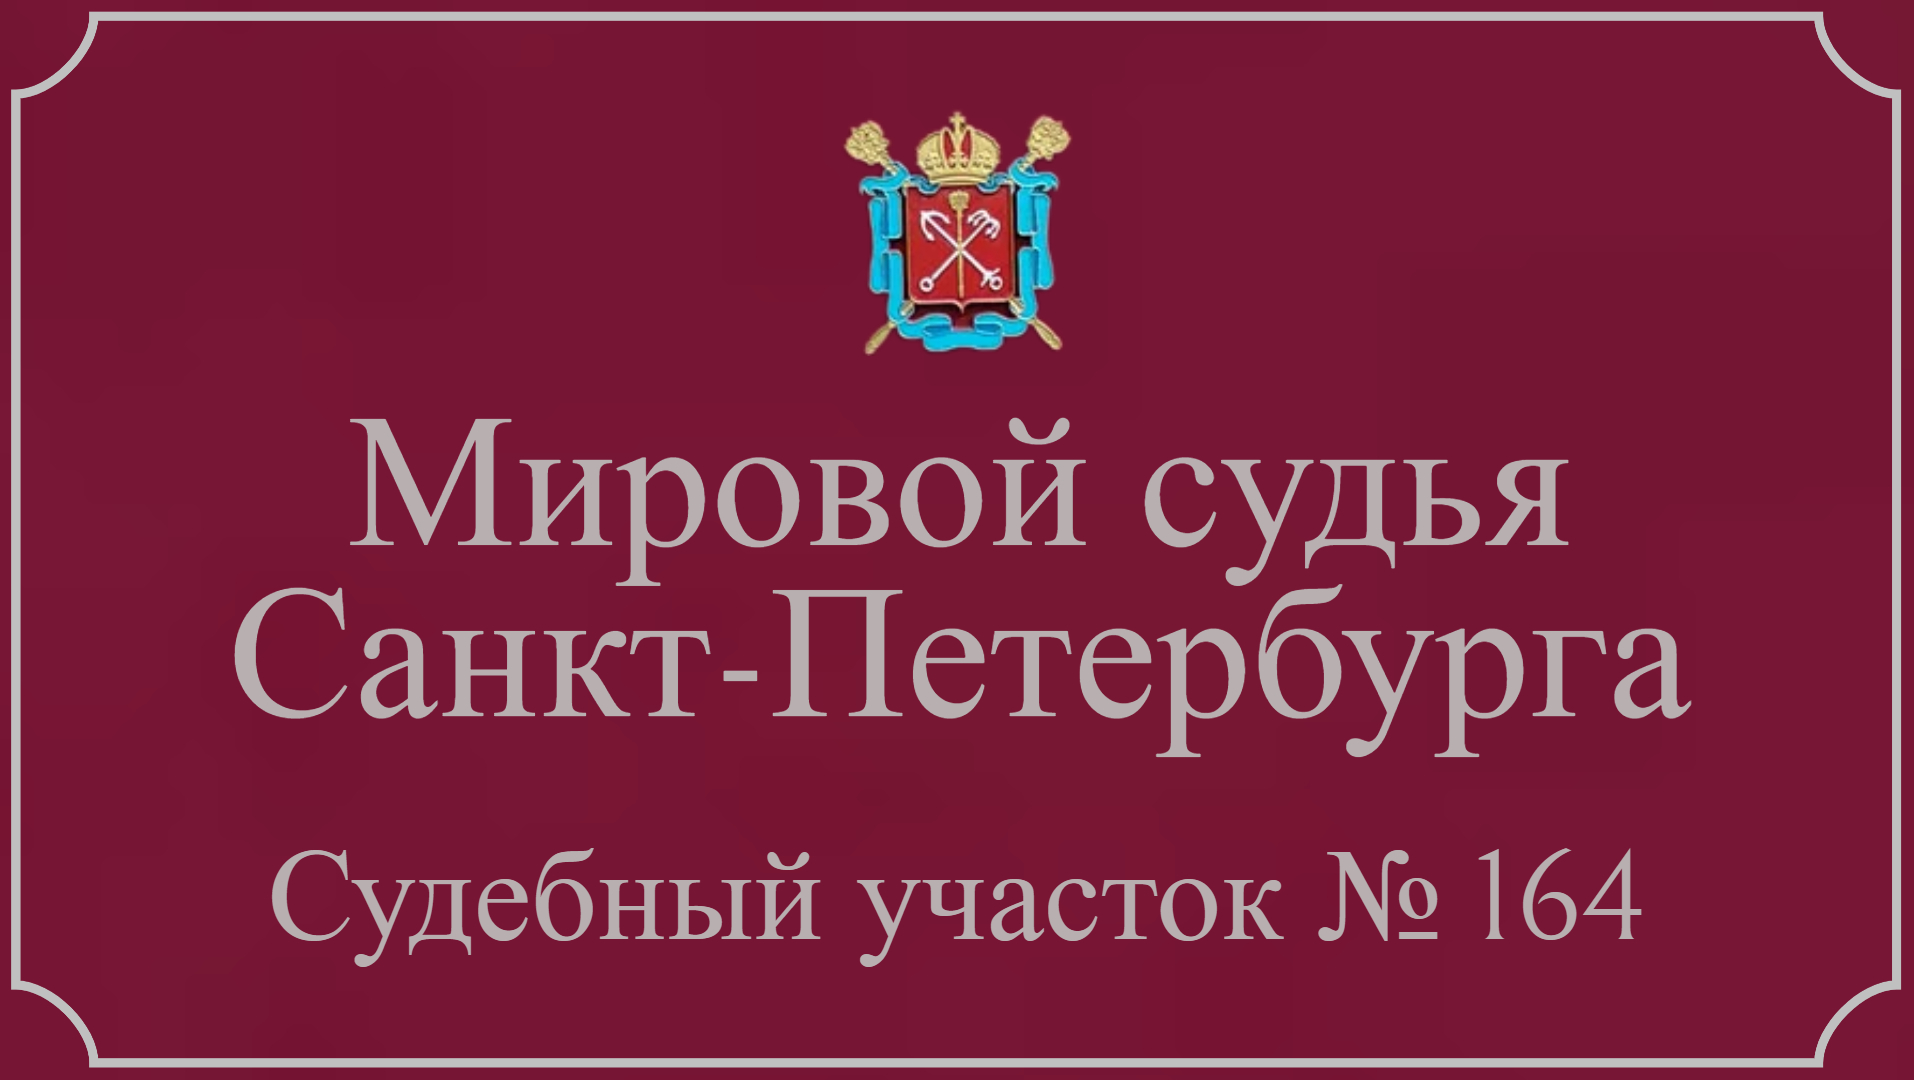 Информация по 164 судебному участку в Санкт-Петербурге.